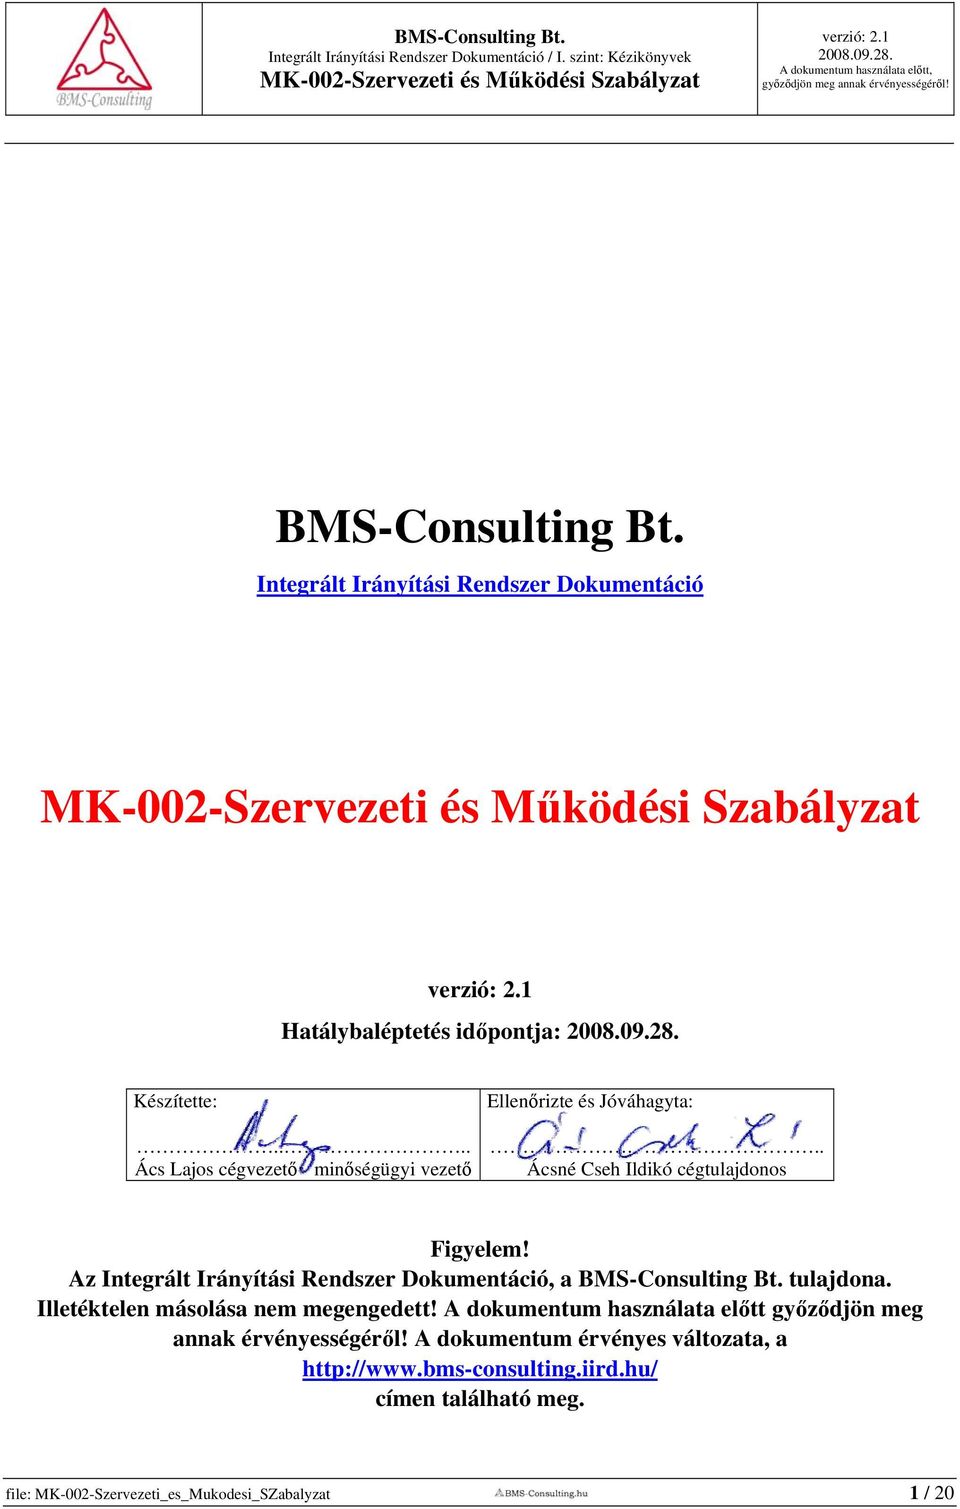 Az Integrált Irányítási Rendszer Dokumentáció, a BMS-Consulting Bt. tulajdona. Illetéktelen másolása nem megengedett!